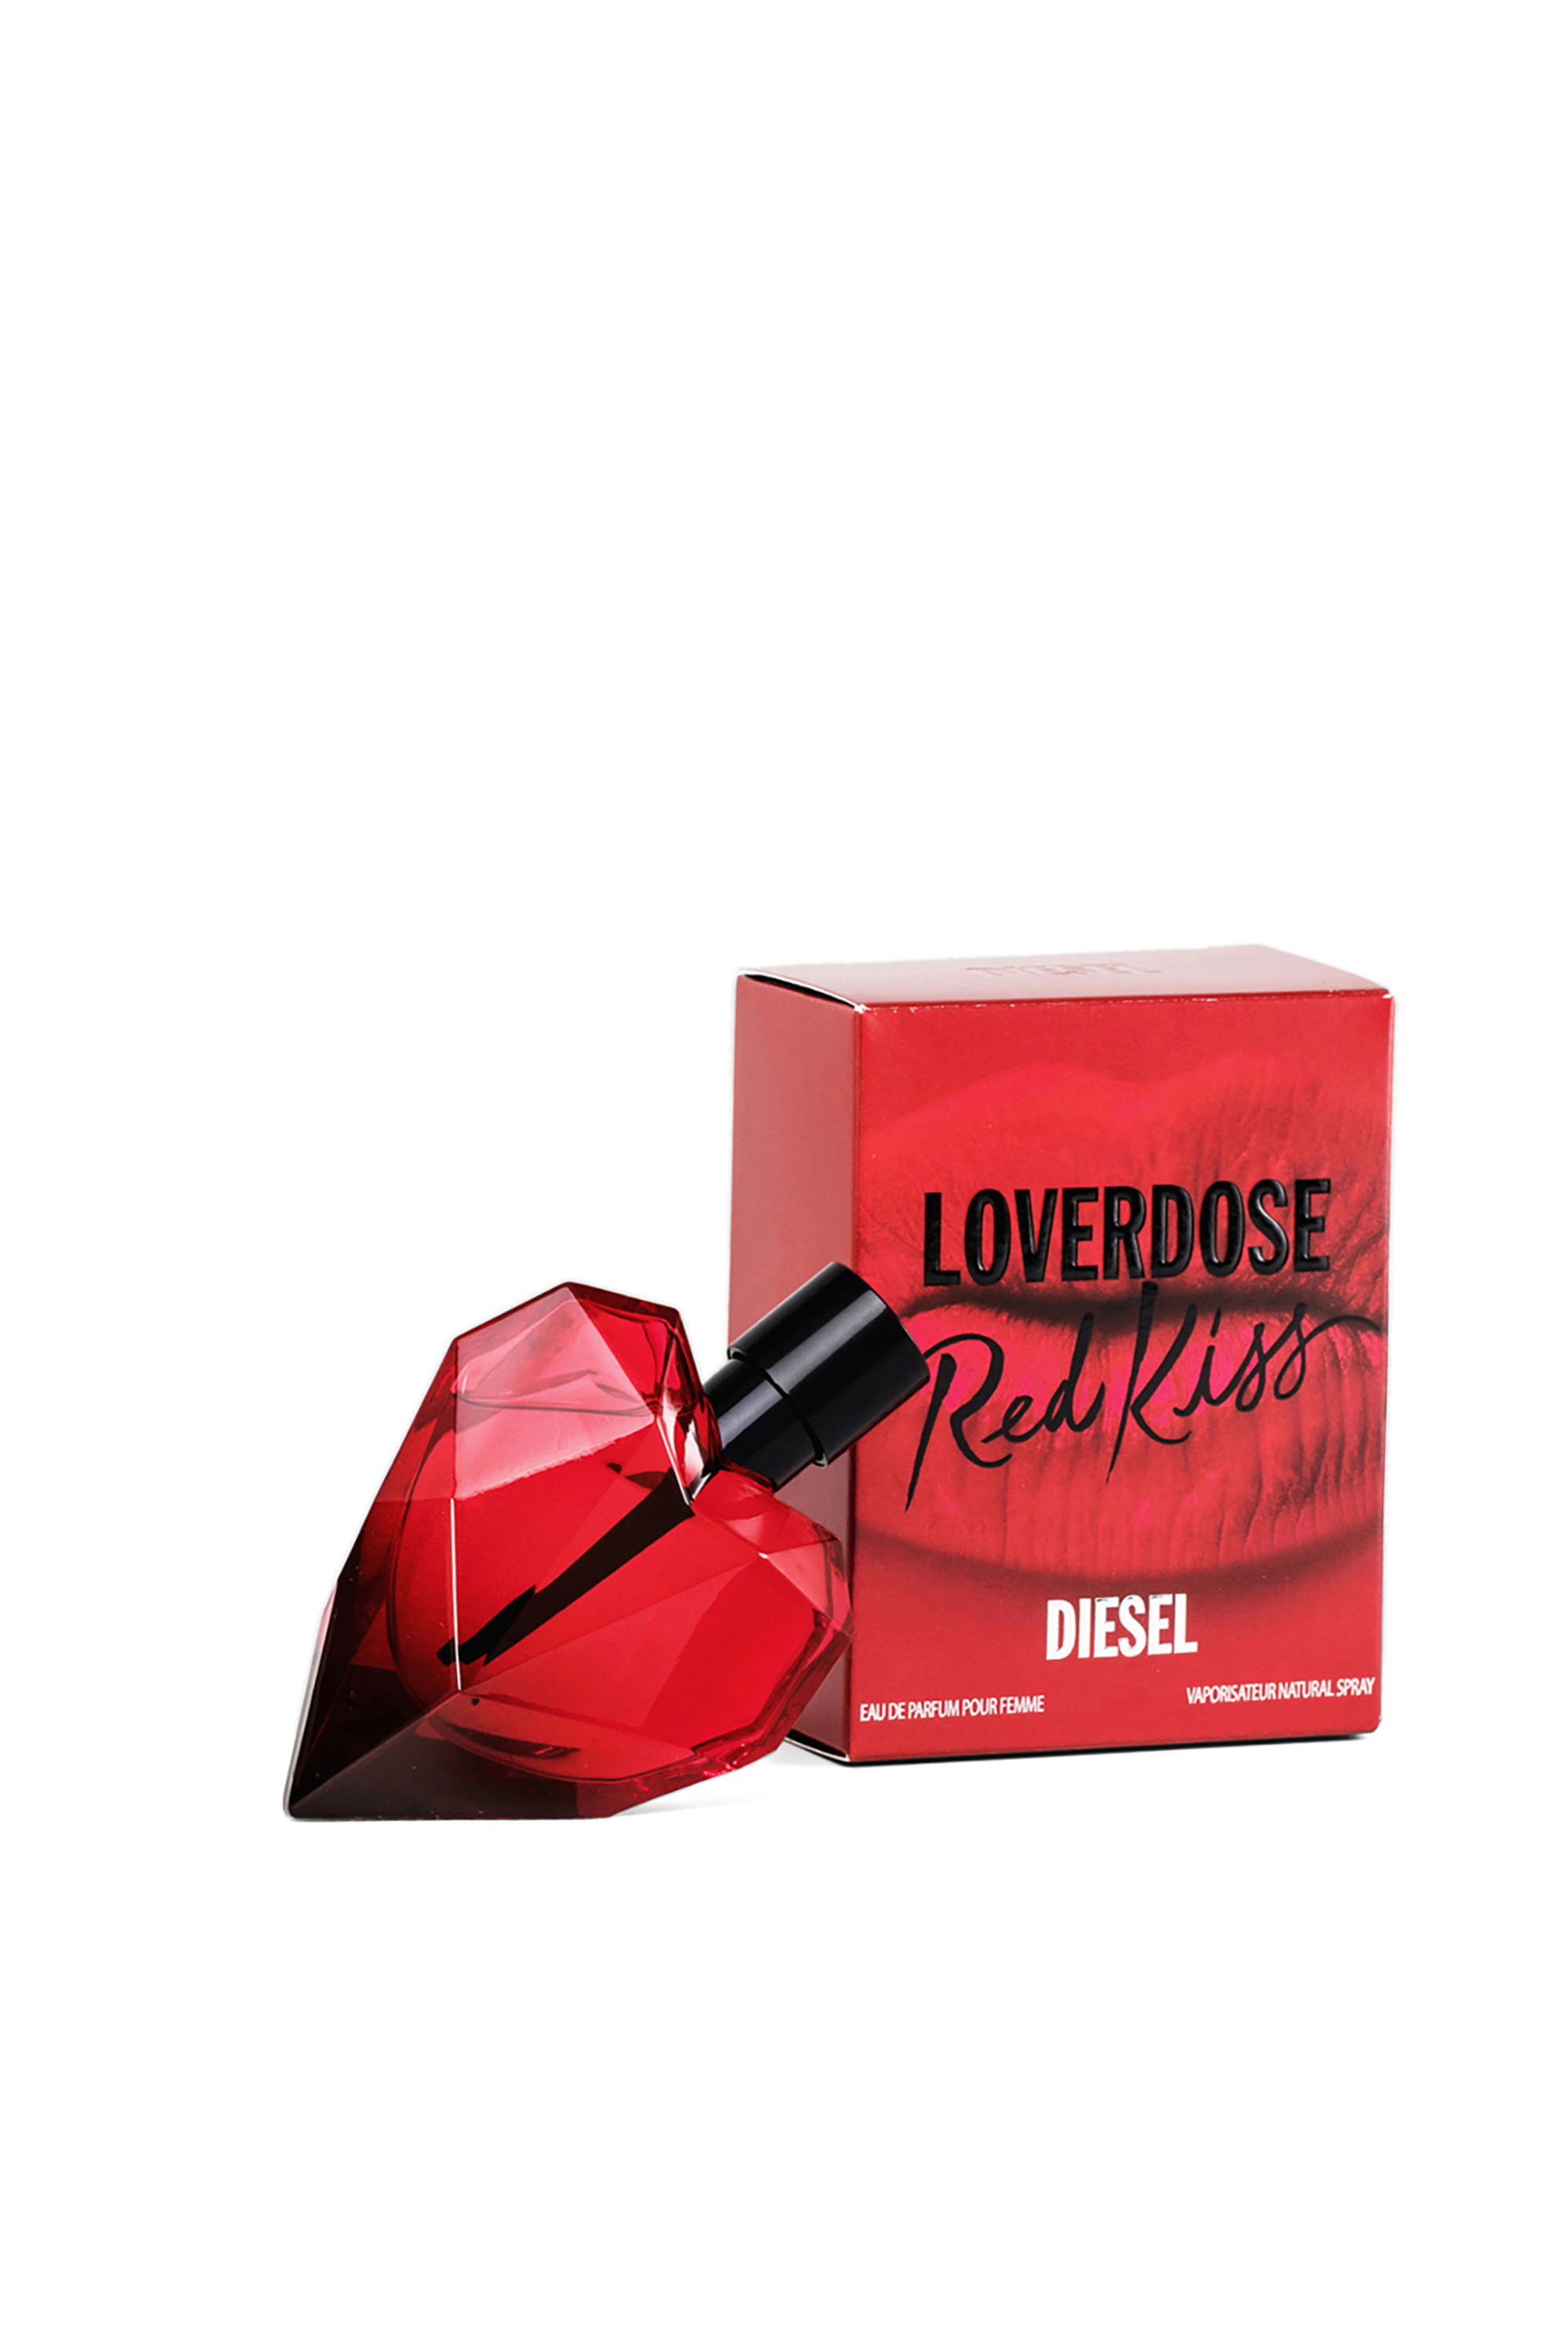 Diesel - LOVERDOSE RED KISS EAU DE PARFUM 50ML,  - Image 2